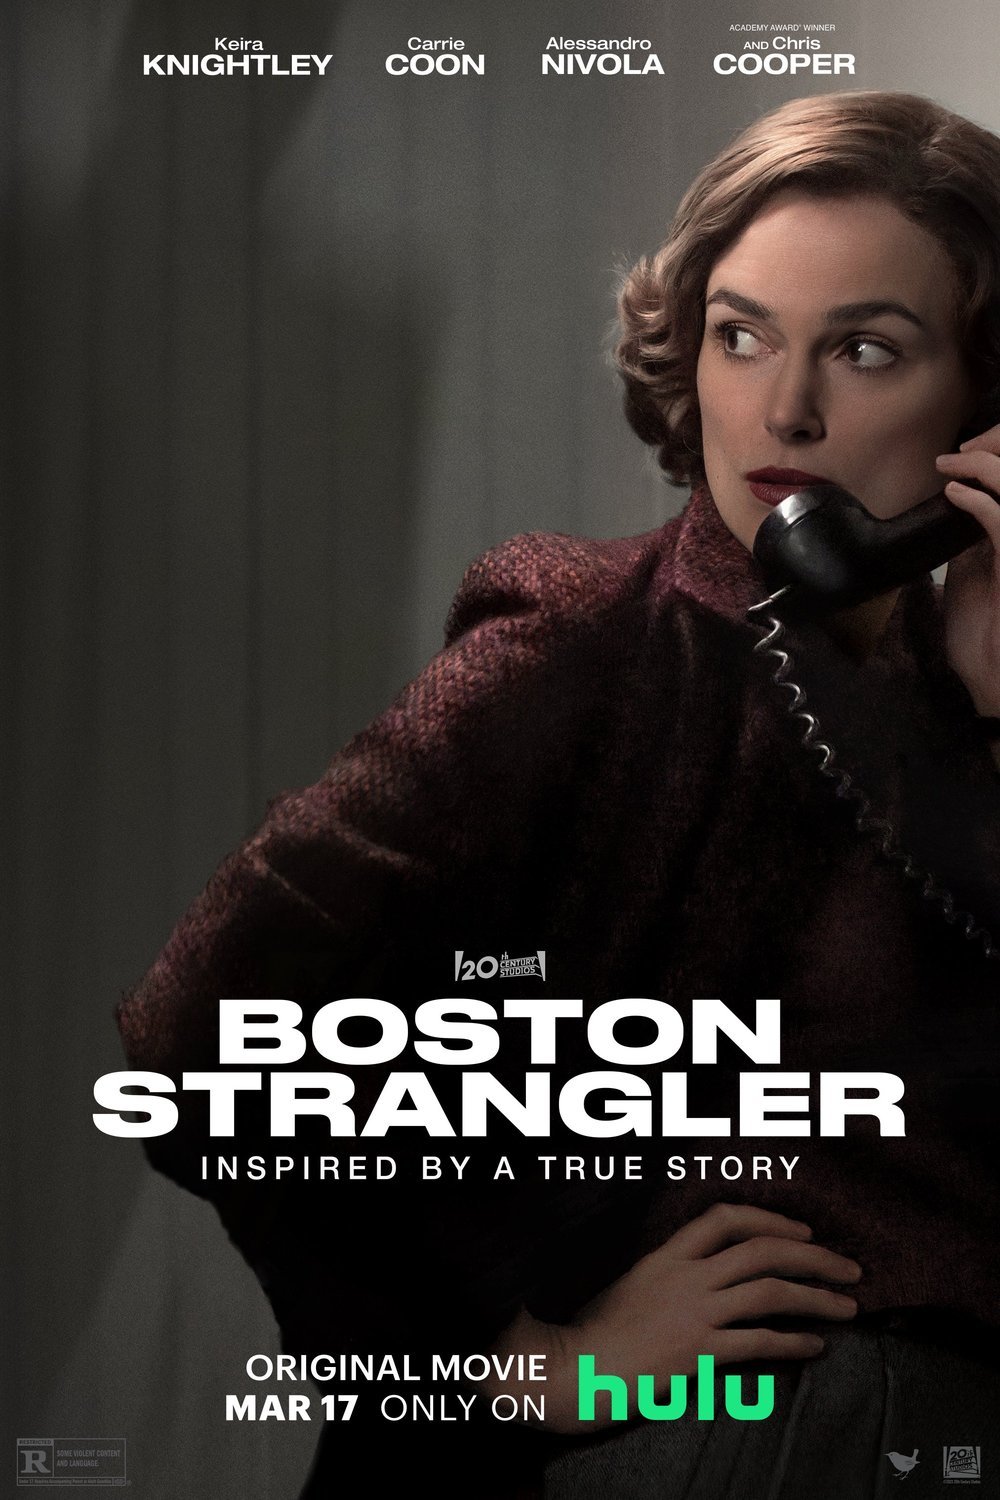 Poster of the movie Boston Strangler